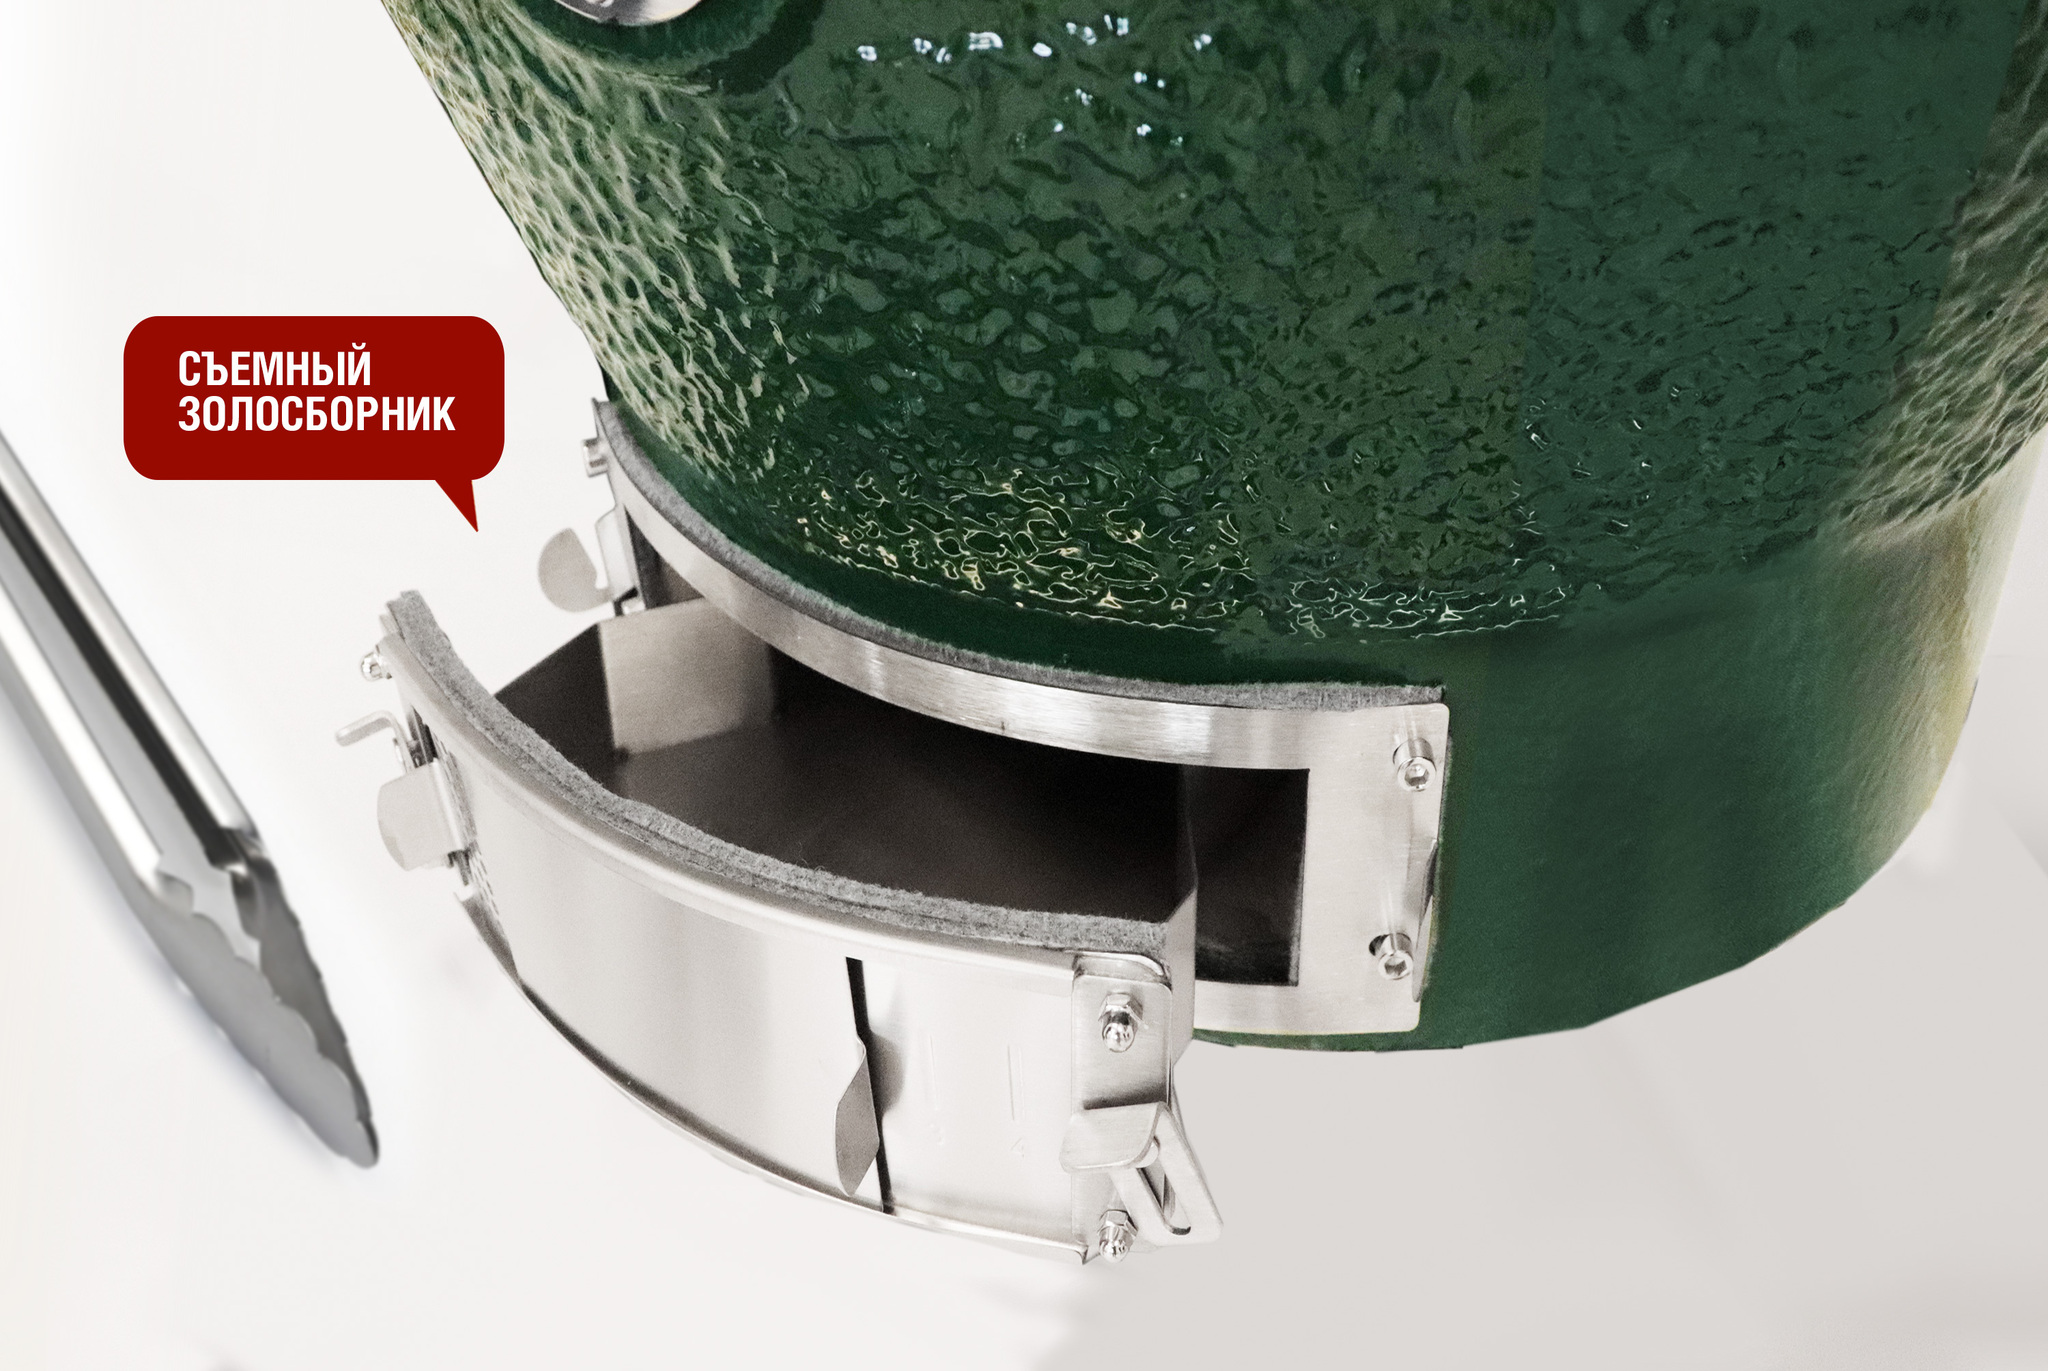 Керамический гриль-барбекю зеленый 24 дюйма / 61 см CFG CHEF в комплекте с модулем для гриля со столиками Артикул:  Фото №9